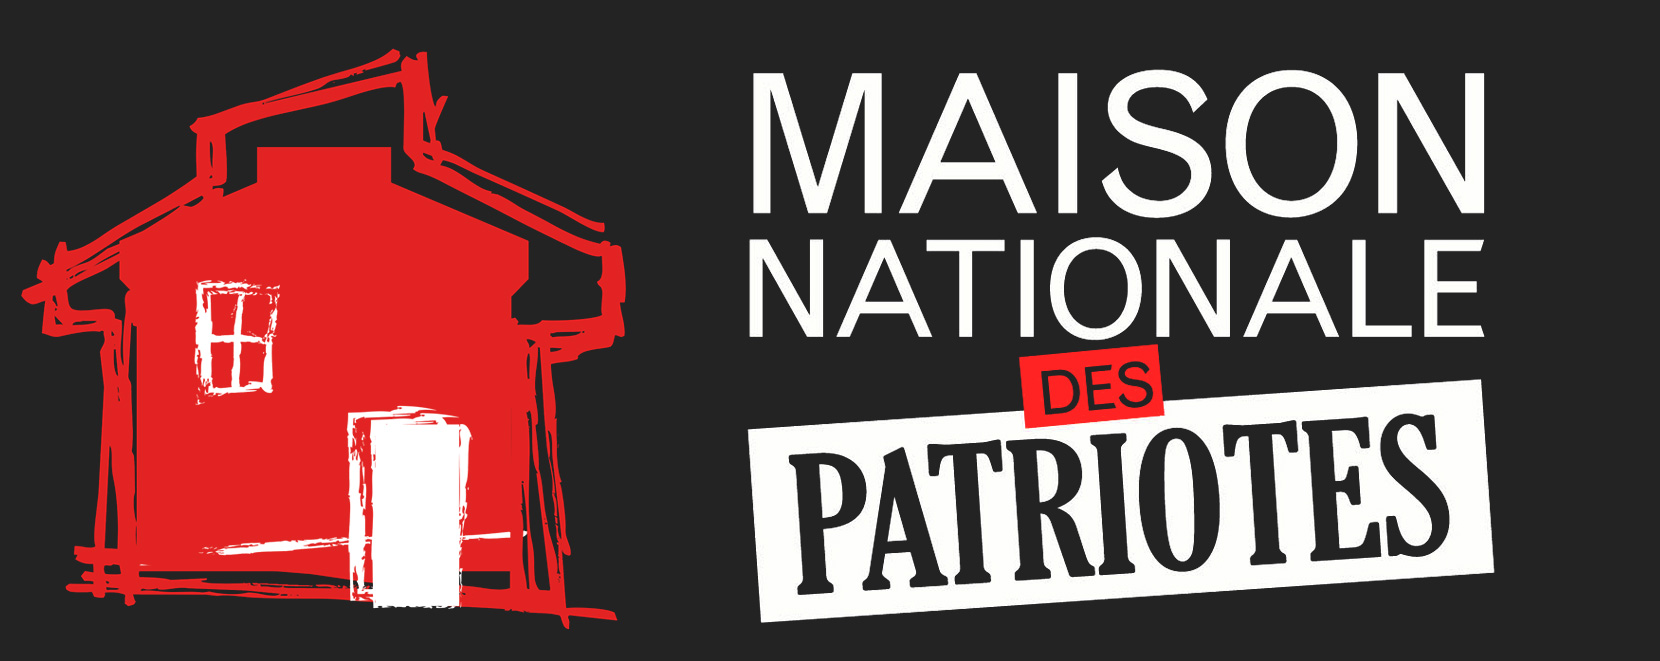 Maison nationale des Patriotes